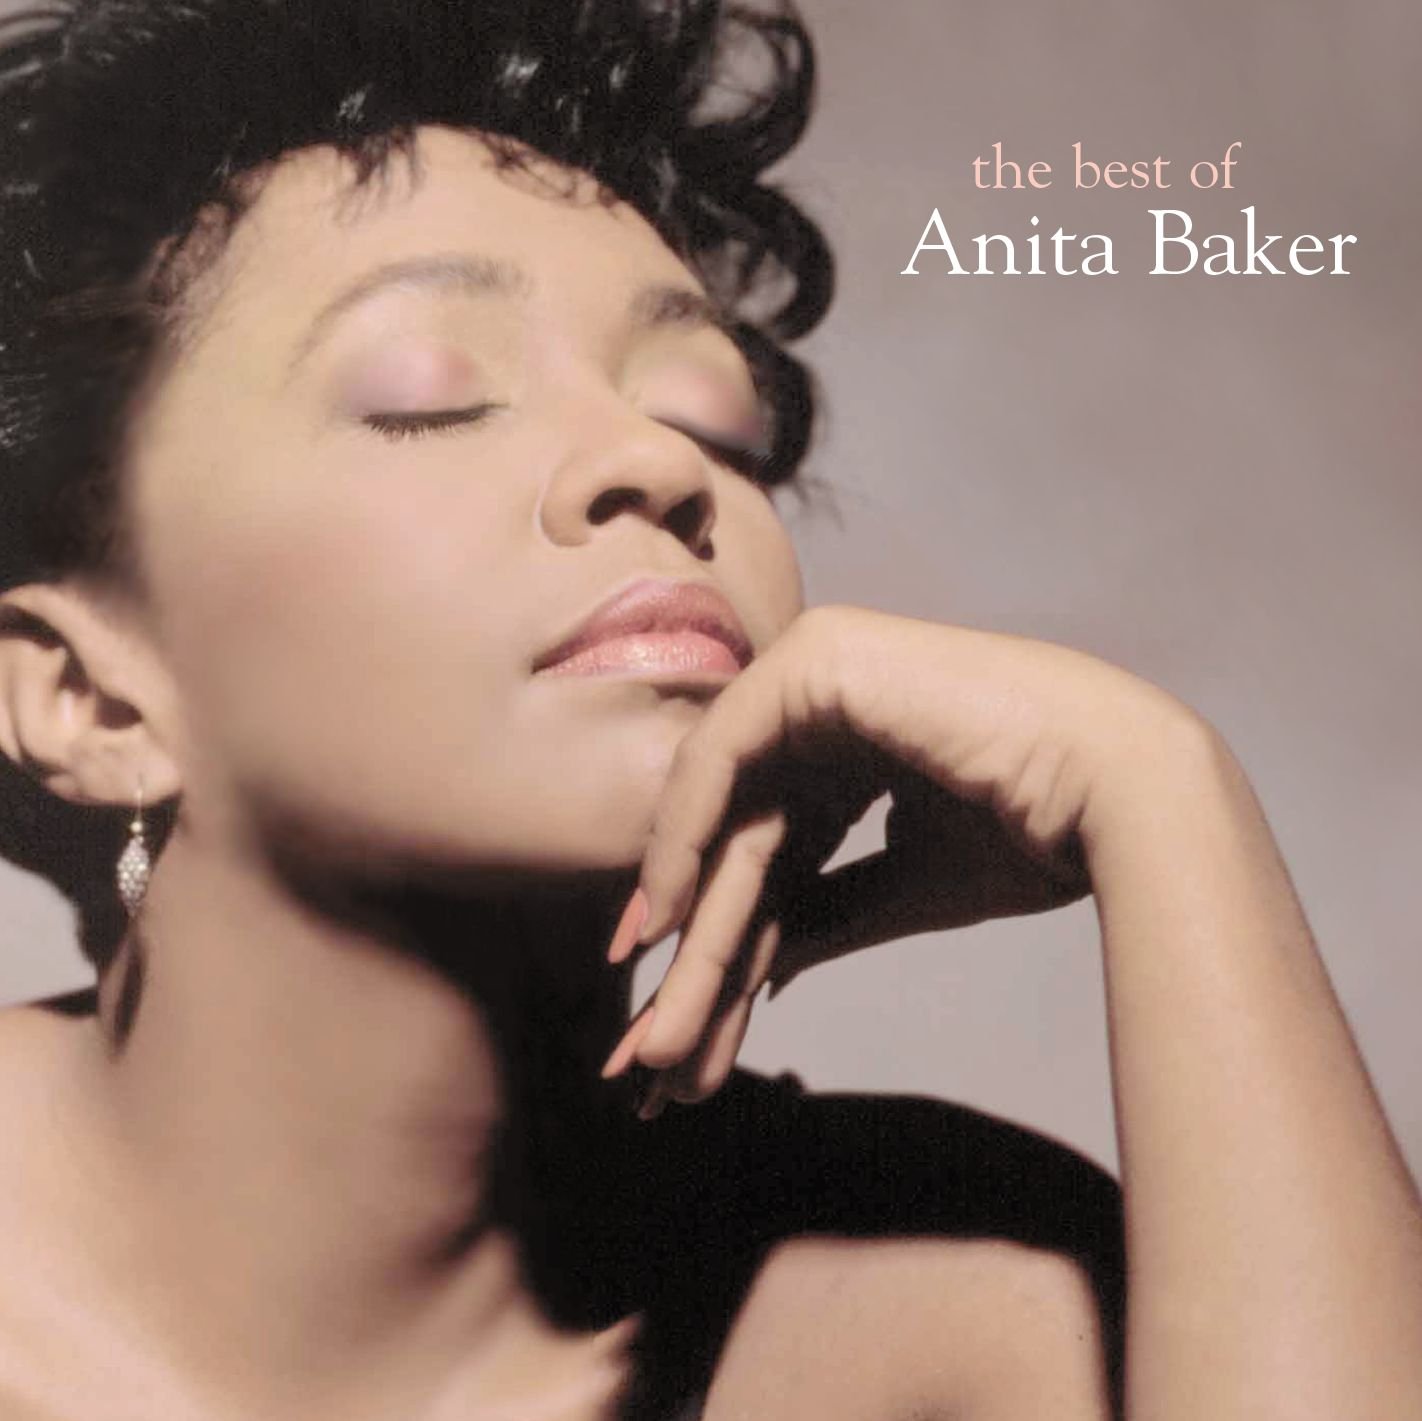 The Best of Anita Baker